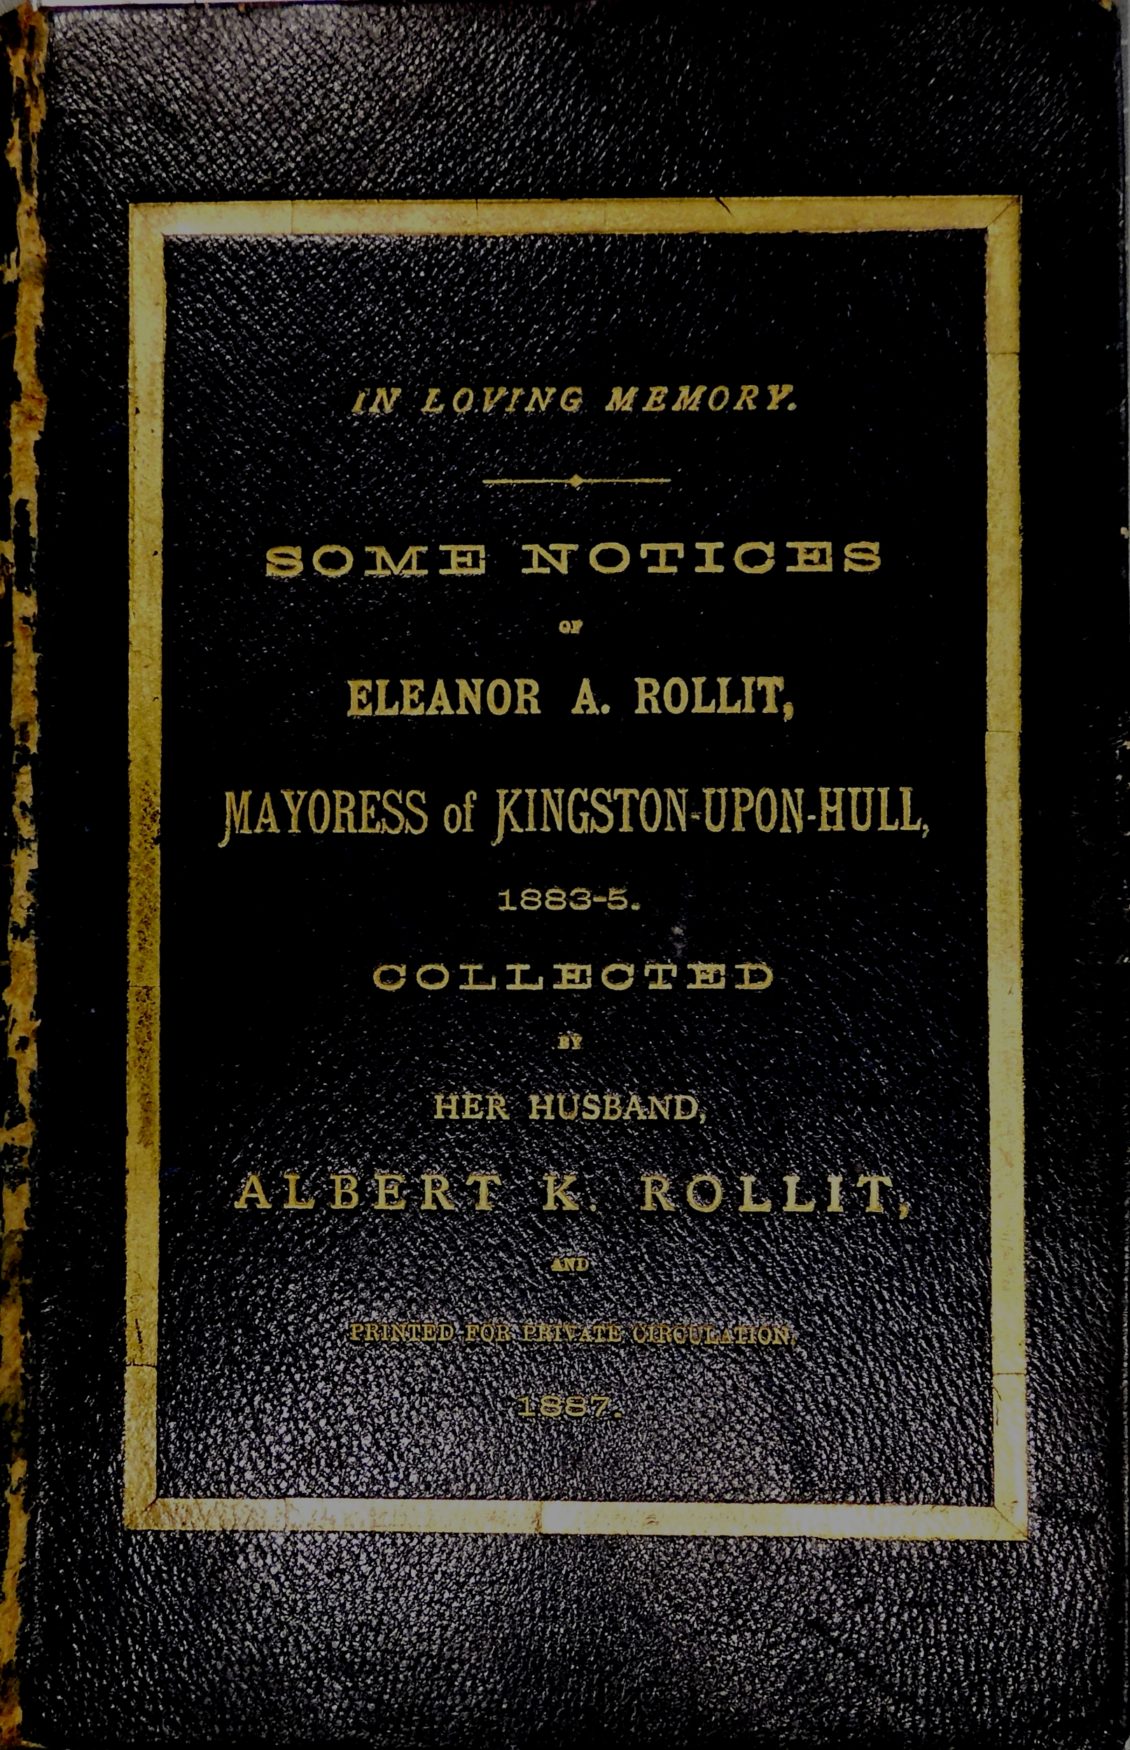 Rollit Memorial Book